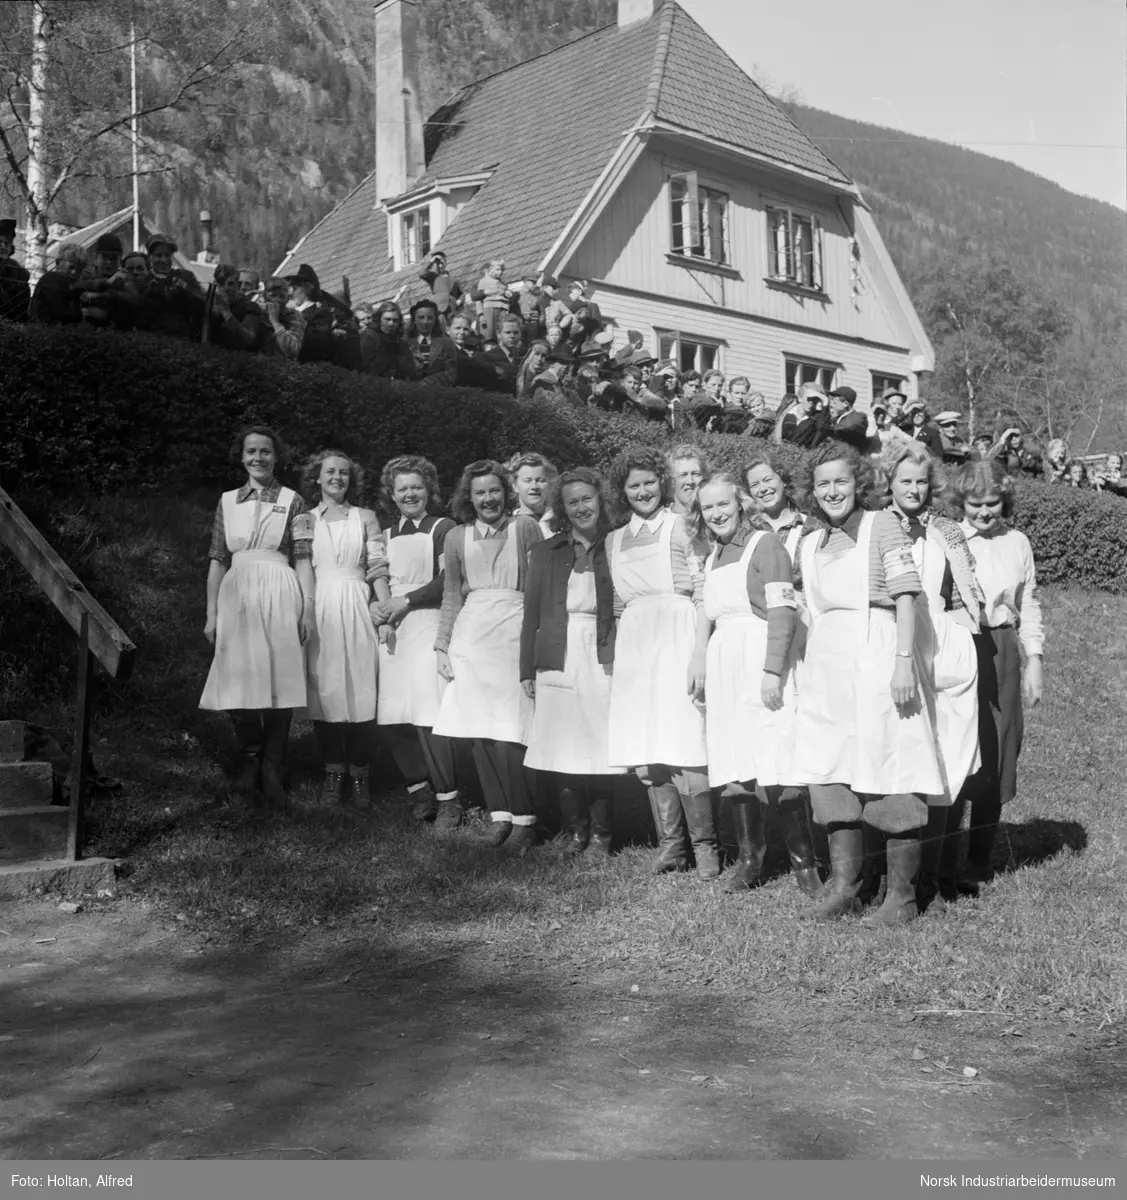 Lotter i uniform fotograferes under frigjøringsdagene i Rjukan.